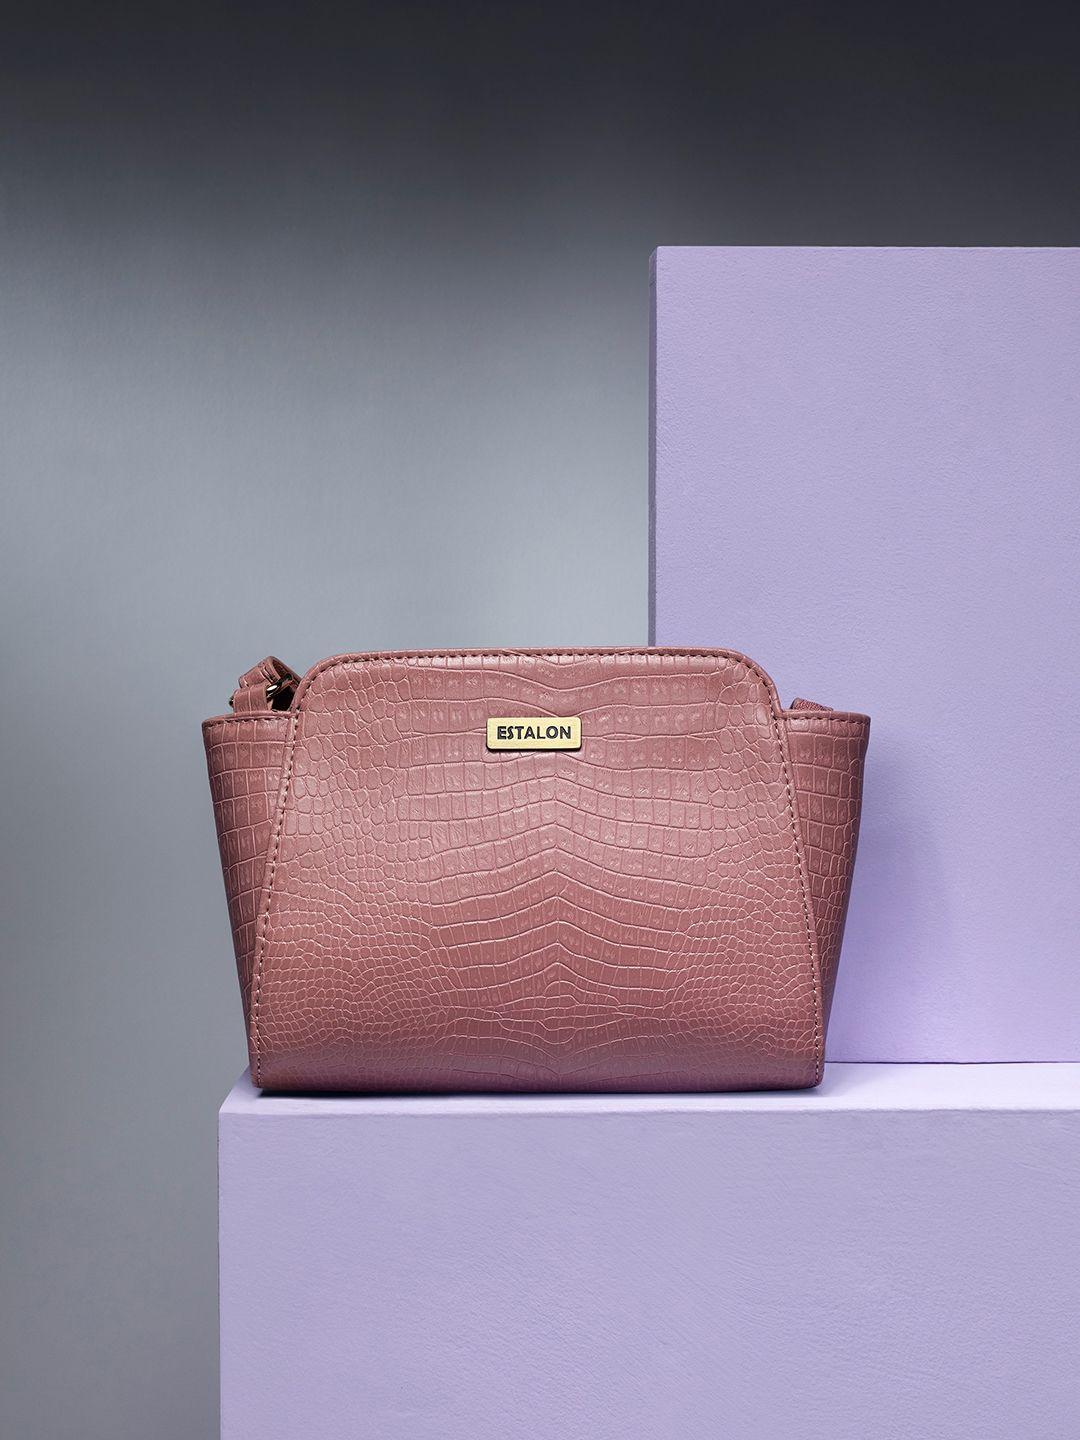 estalon pink textured pu structured sling bag with adjustable strap